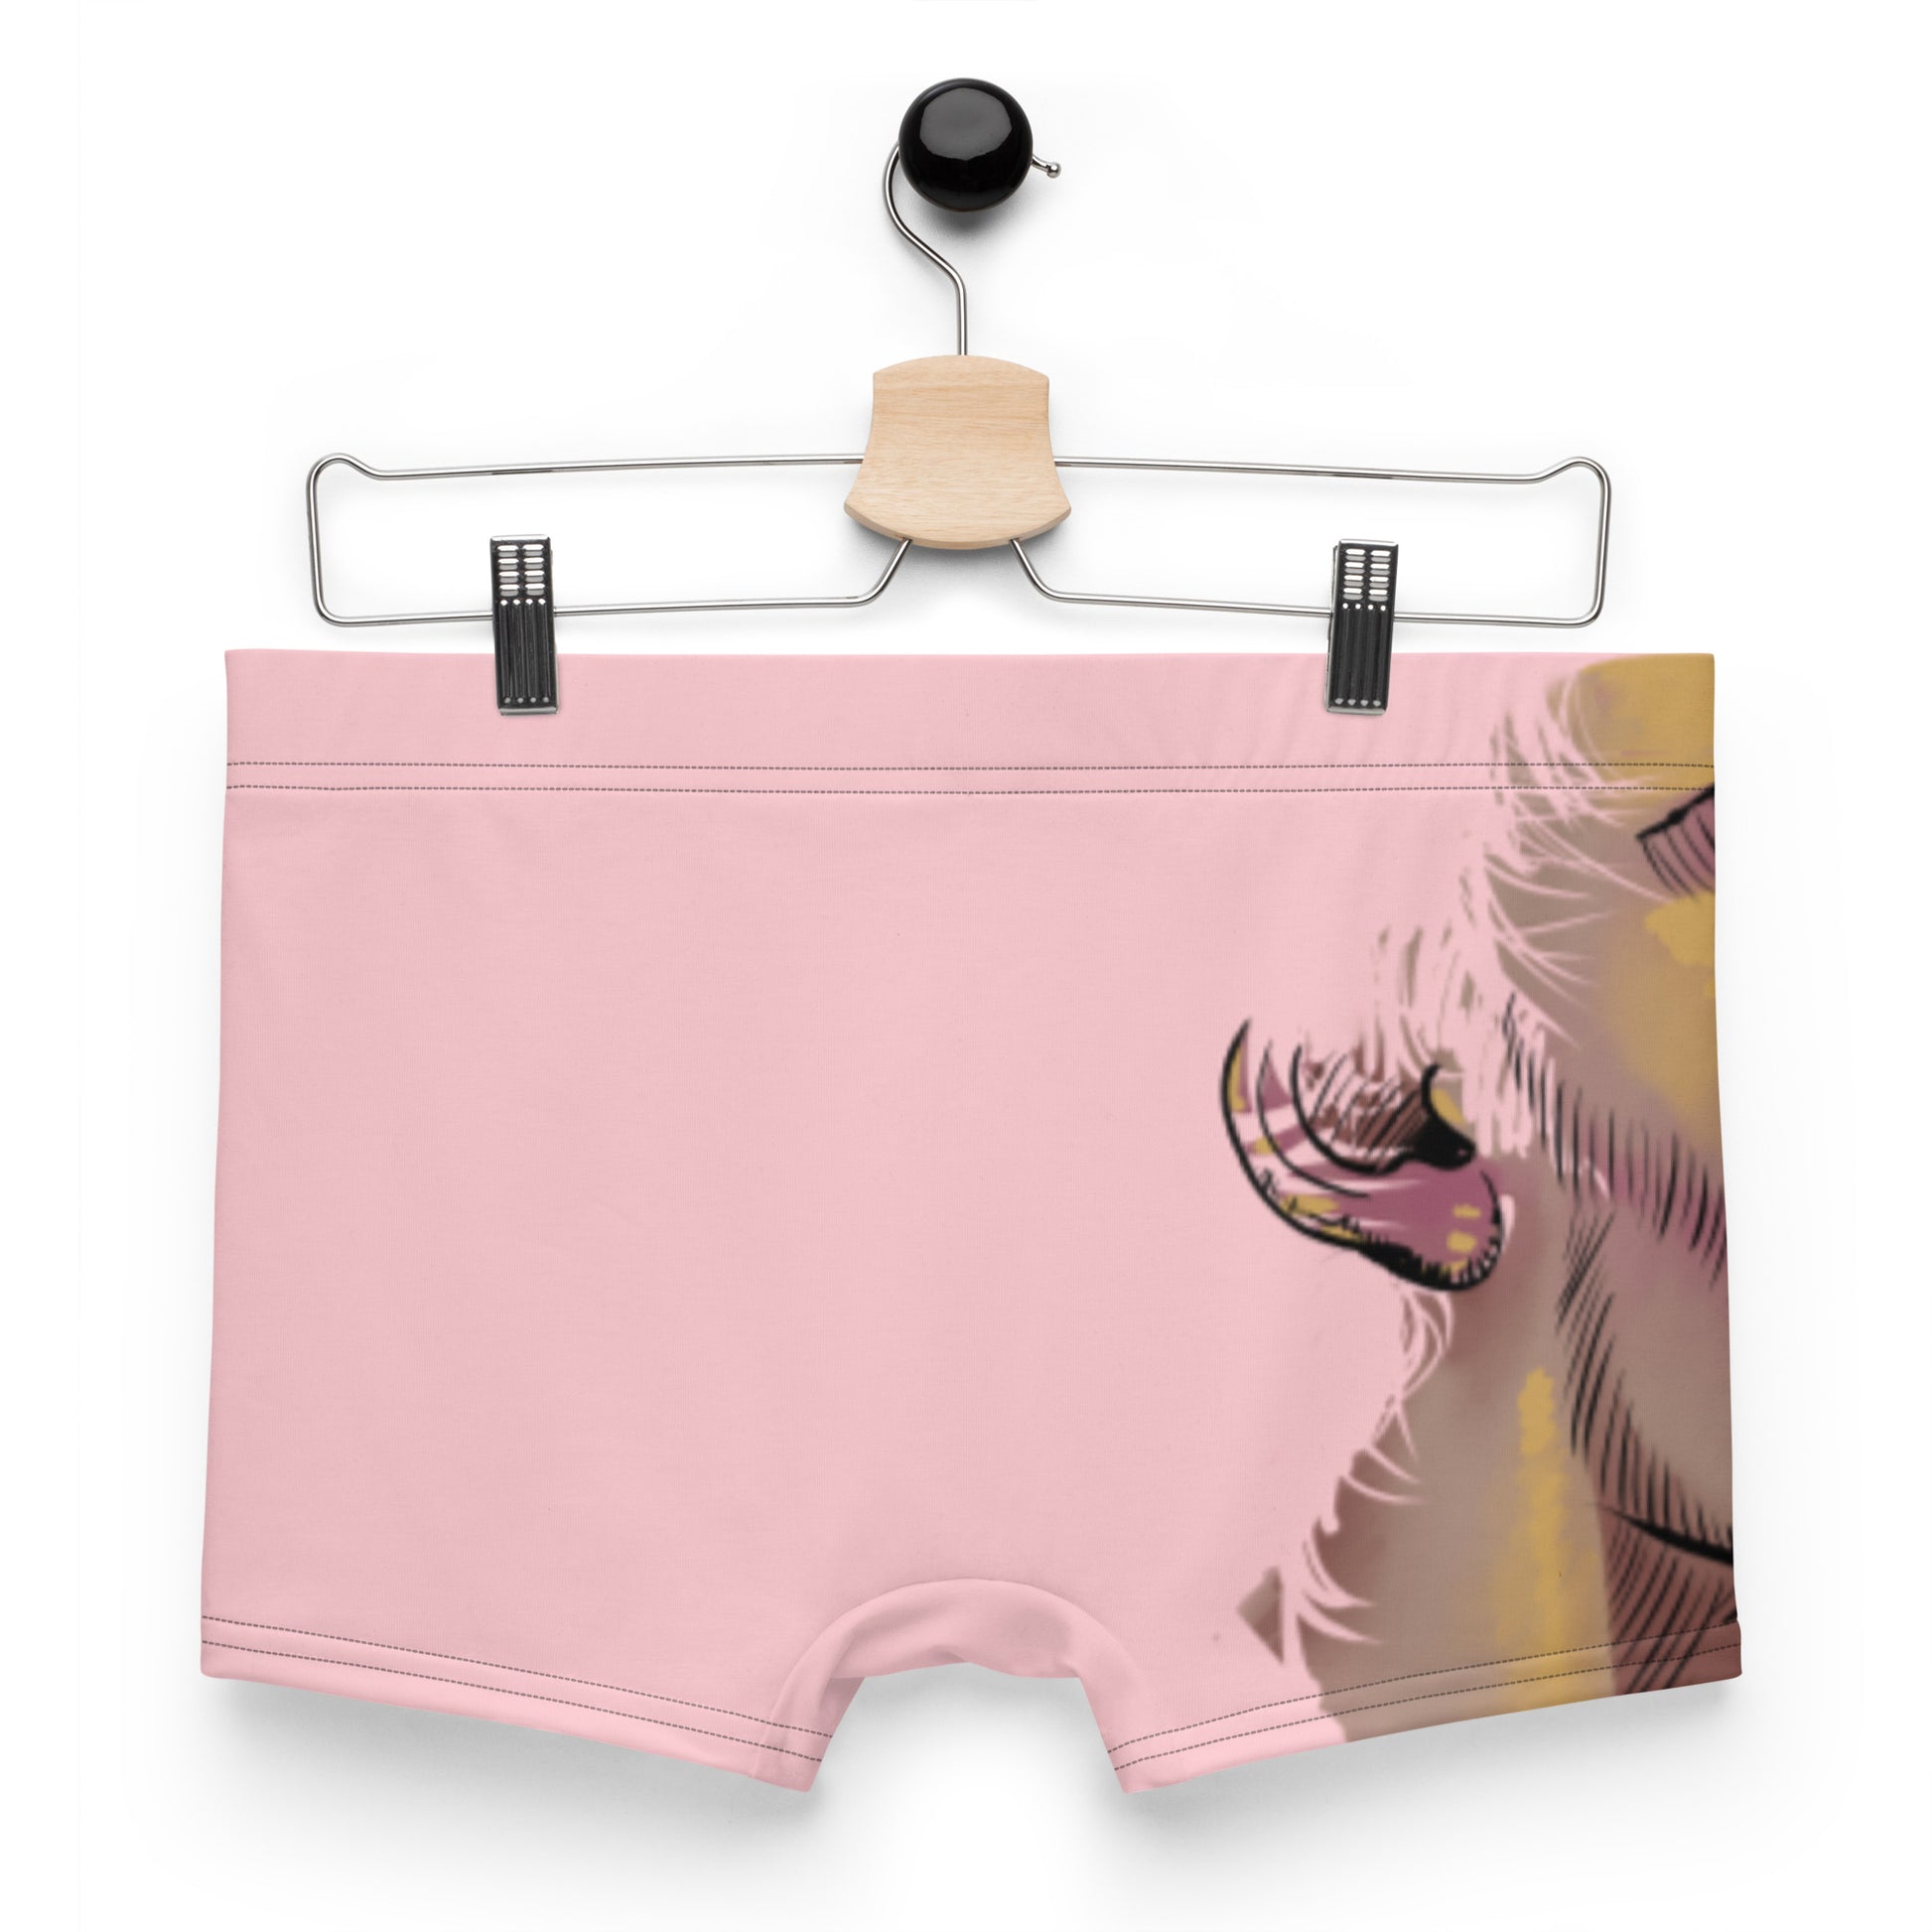 Calzoncillos boxer lengua color rosa –